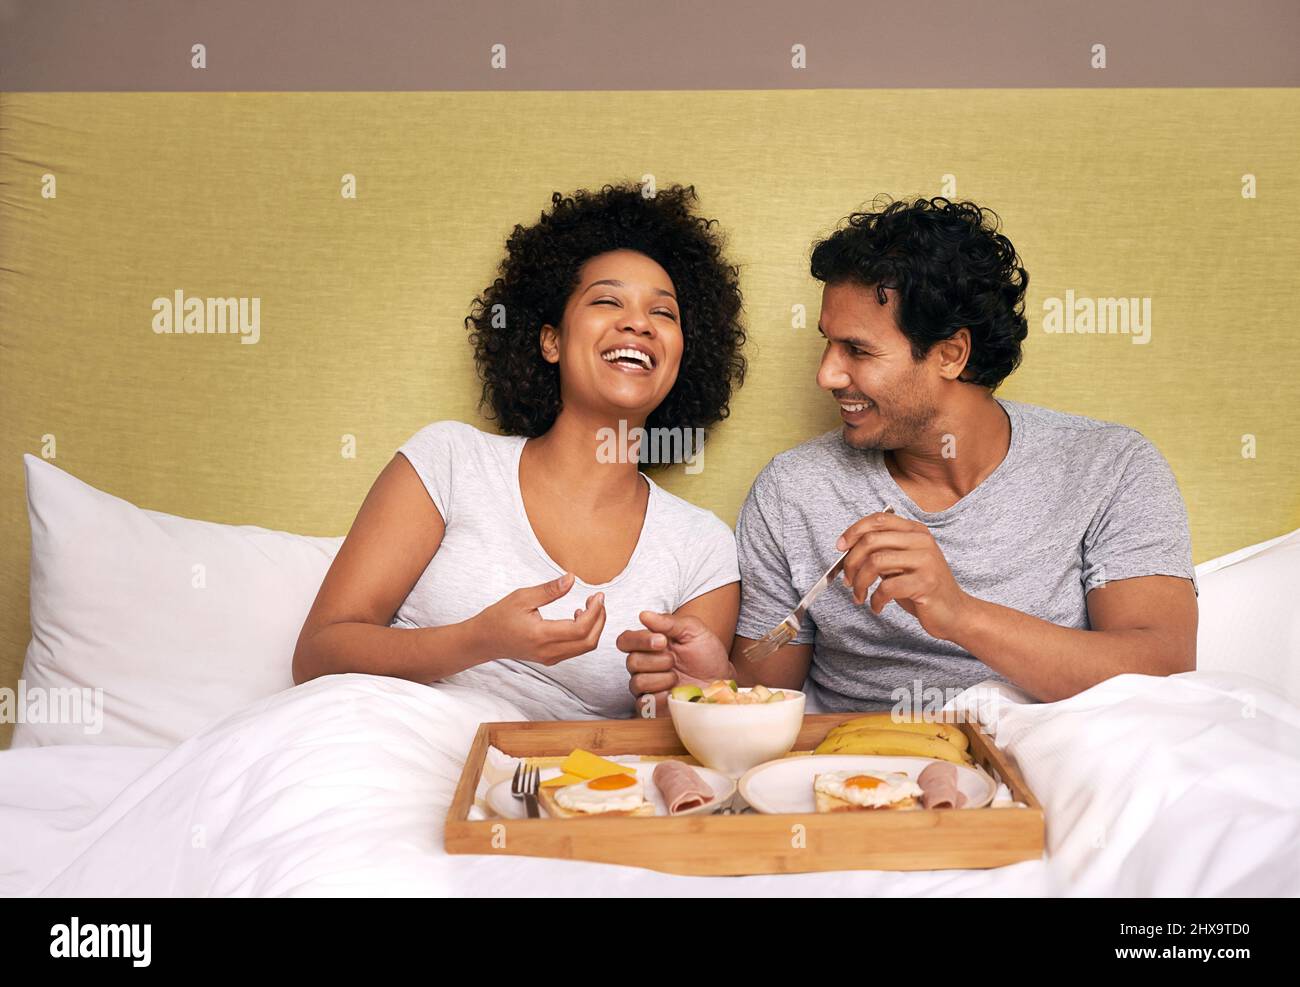 Frühstück im Bett. Ein süßes Paar, das sich das Frühstück im Bett teilt. Stockfoto